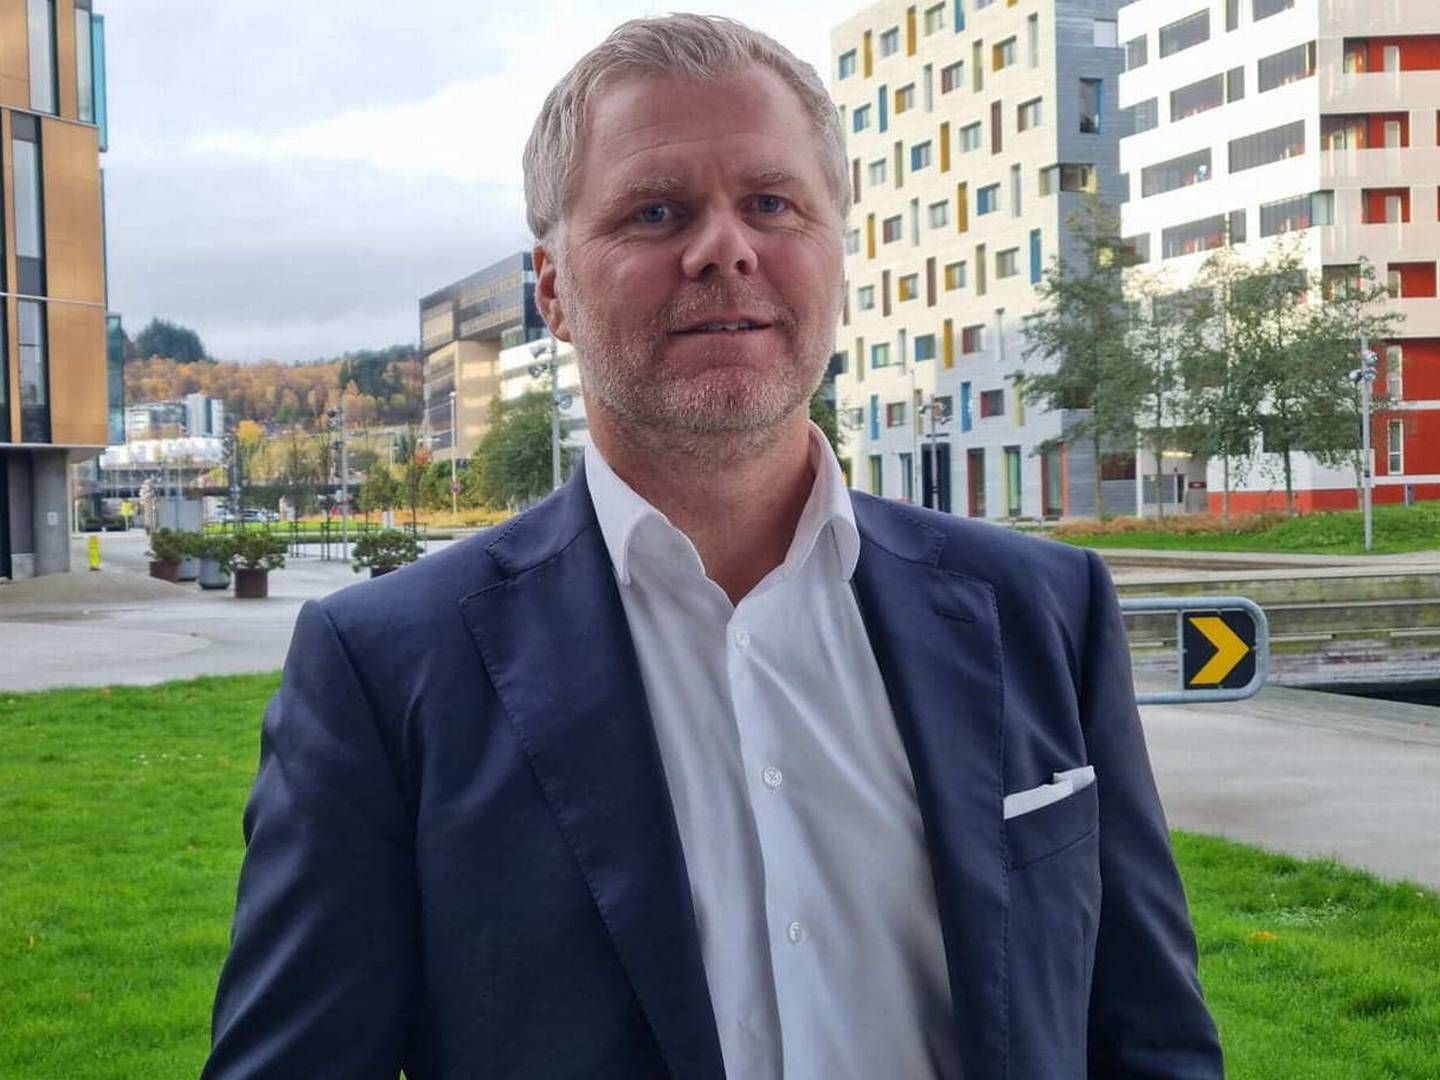 HAR NOK Å JOBBE MED: Administrerende direktør Truls Kolsrud Engene og SVG Property har mange prosjektet på gang, men åpner for kjøp av attraktive eiendommer hvis prisen er rett. | Foto: Øystein Byberg